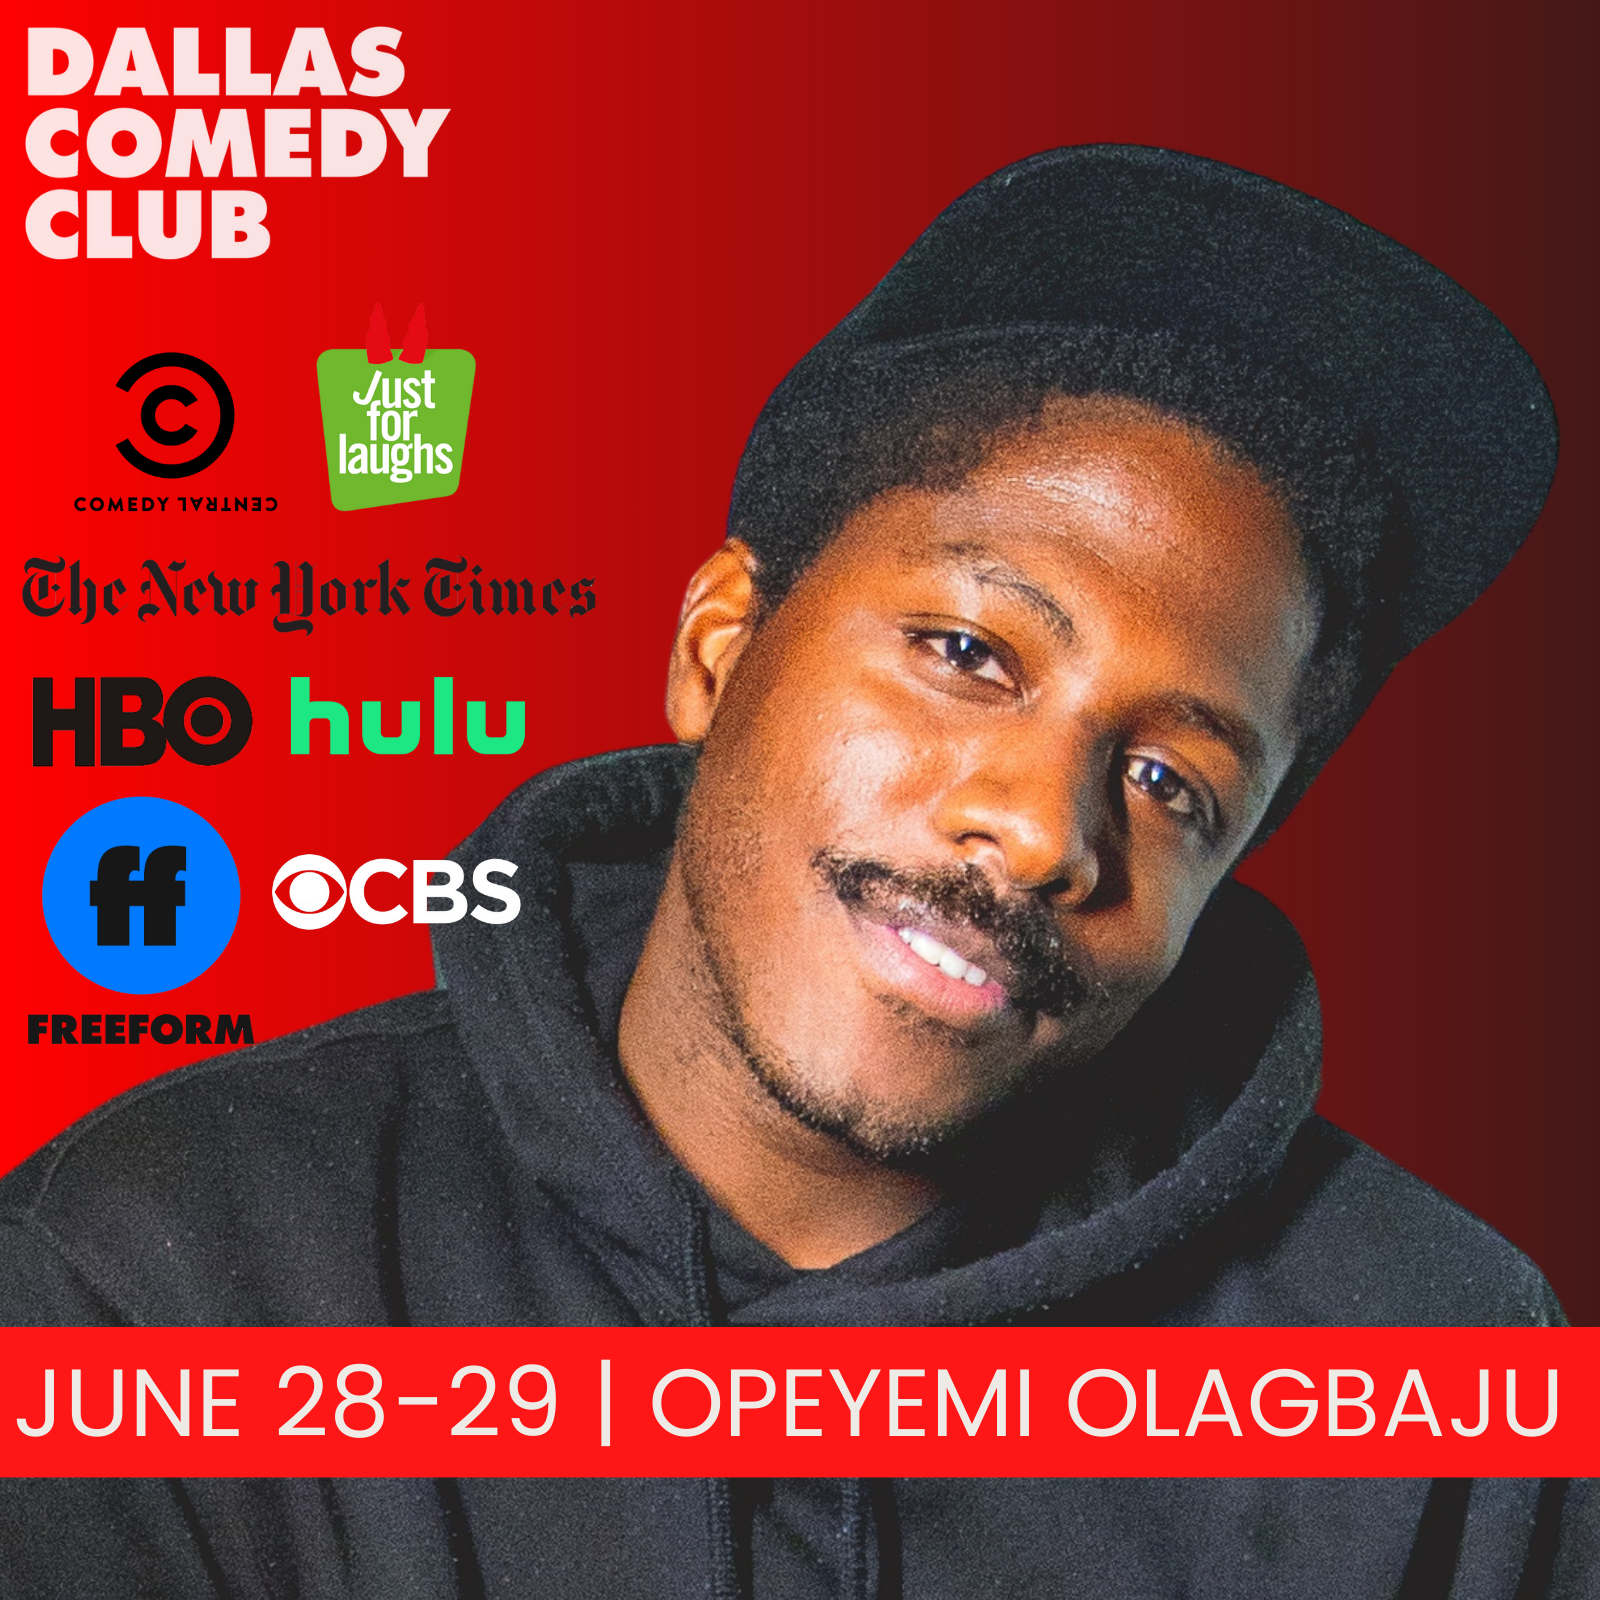 Opeyemi Olagbaju at Dallas Comedy Club